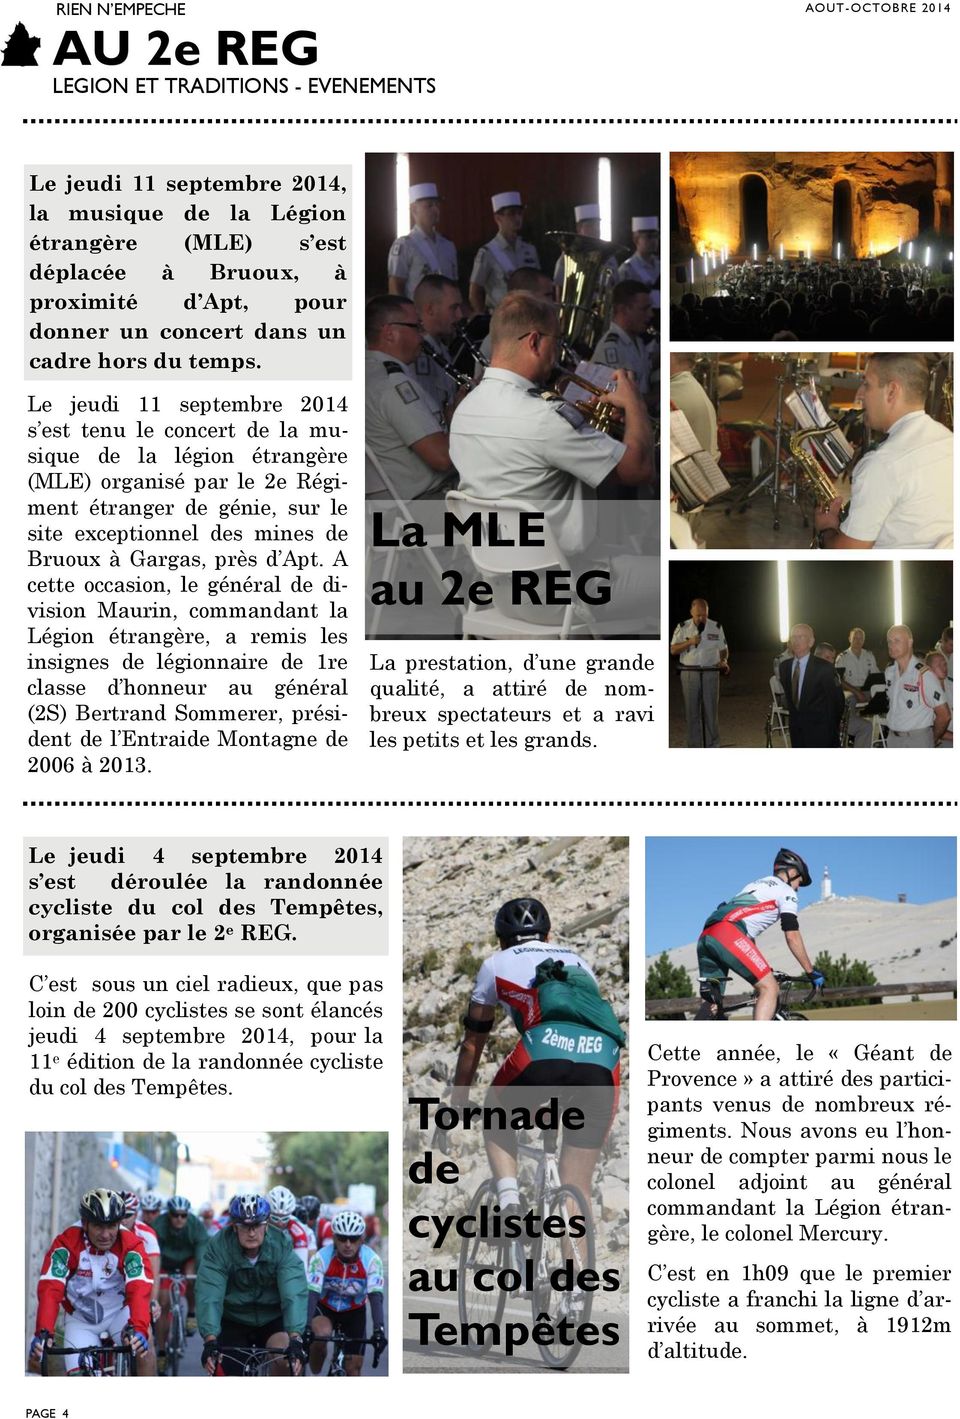 Le jeudi 11 septembre 2014 s est tenu le concert de la musique de la légion étrangère (MLE) organisé par le 2e Régiment étranger de génie, sur le site exceptionnel des mines de Bruoux à Gargas, près